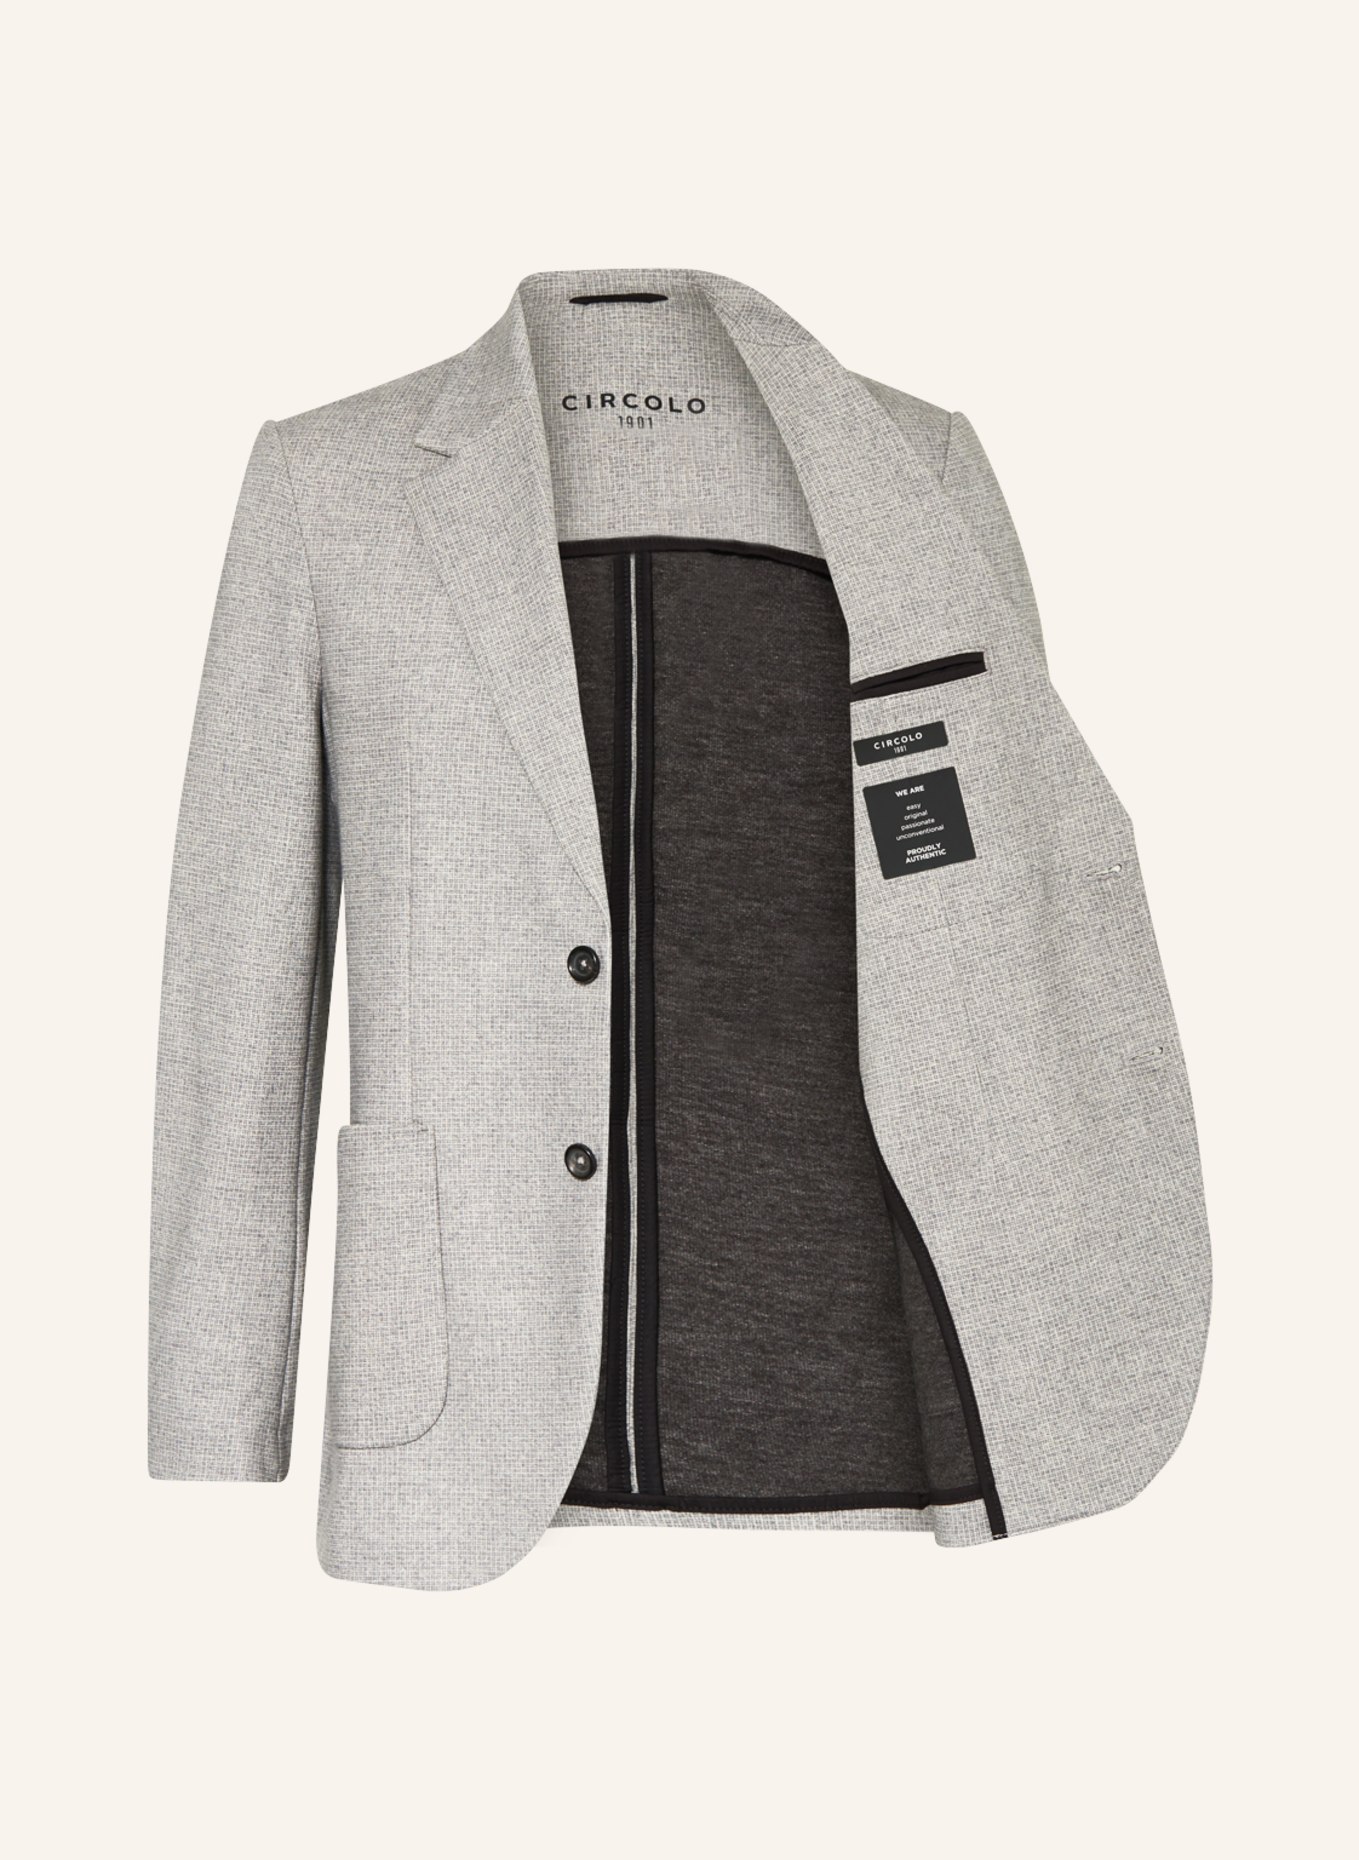 CIRCOLO 1901 Suit jacket Slim Fit, Color: GRAY GRAY-L (Image 5)